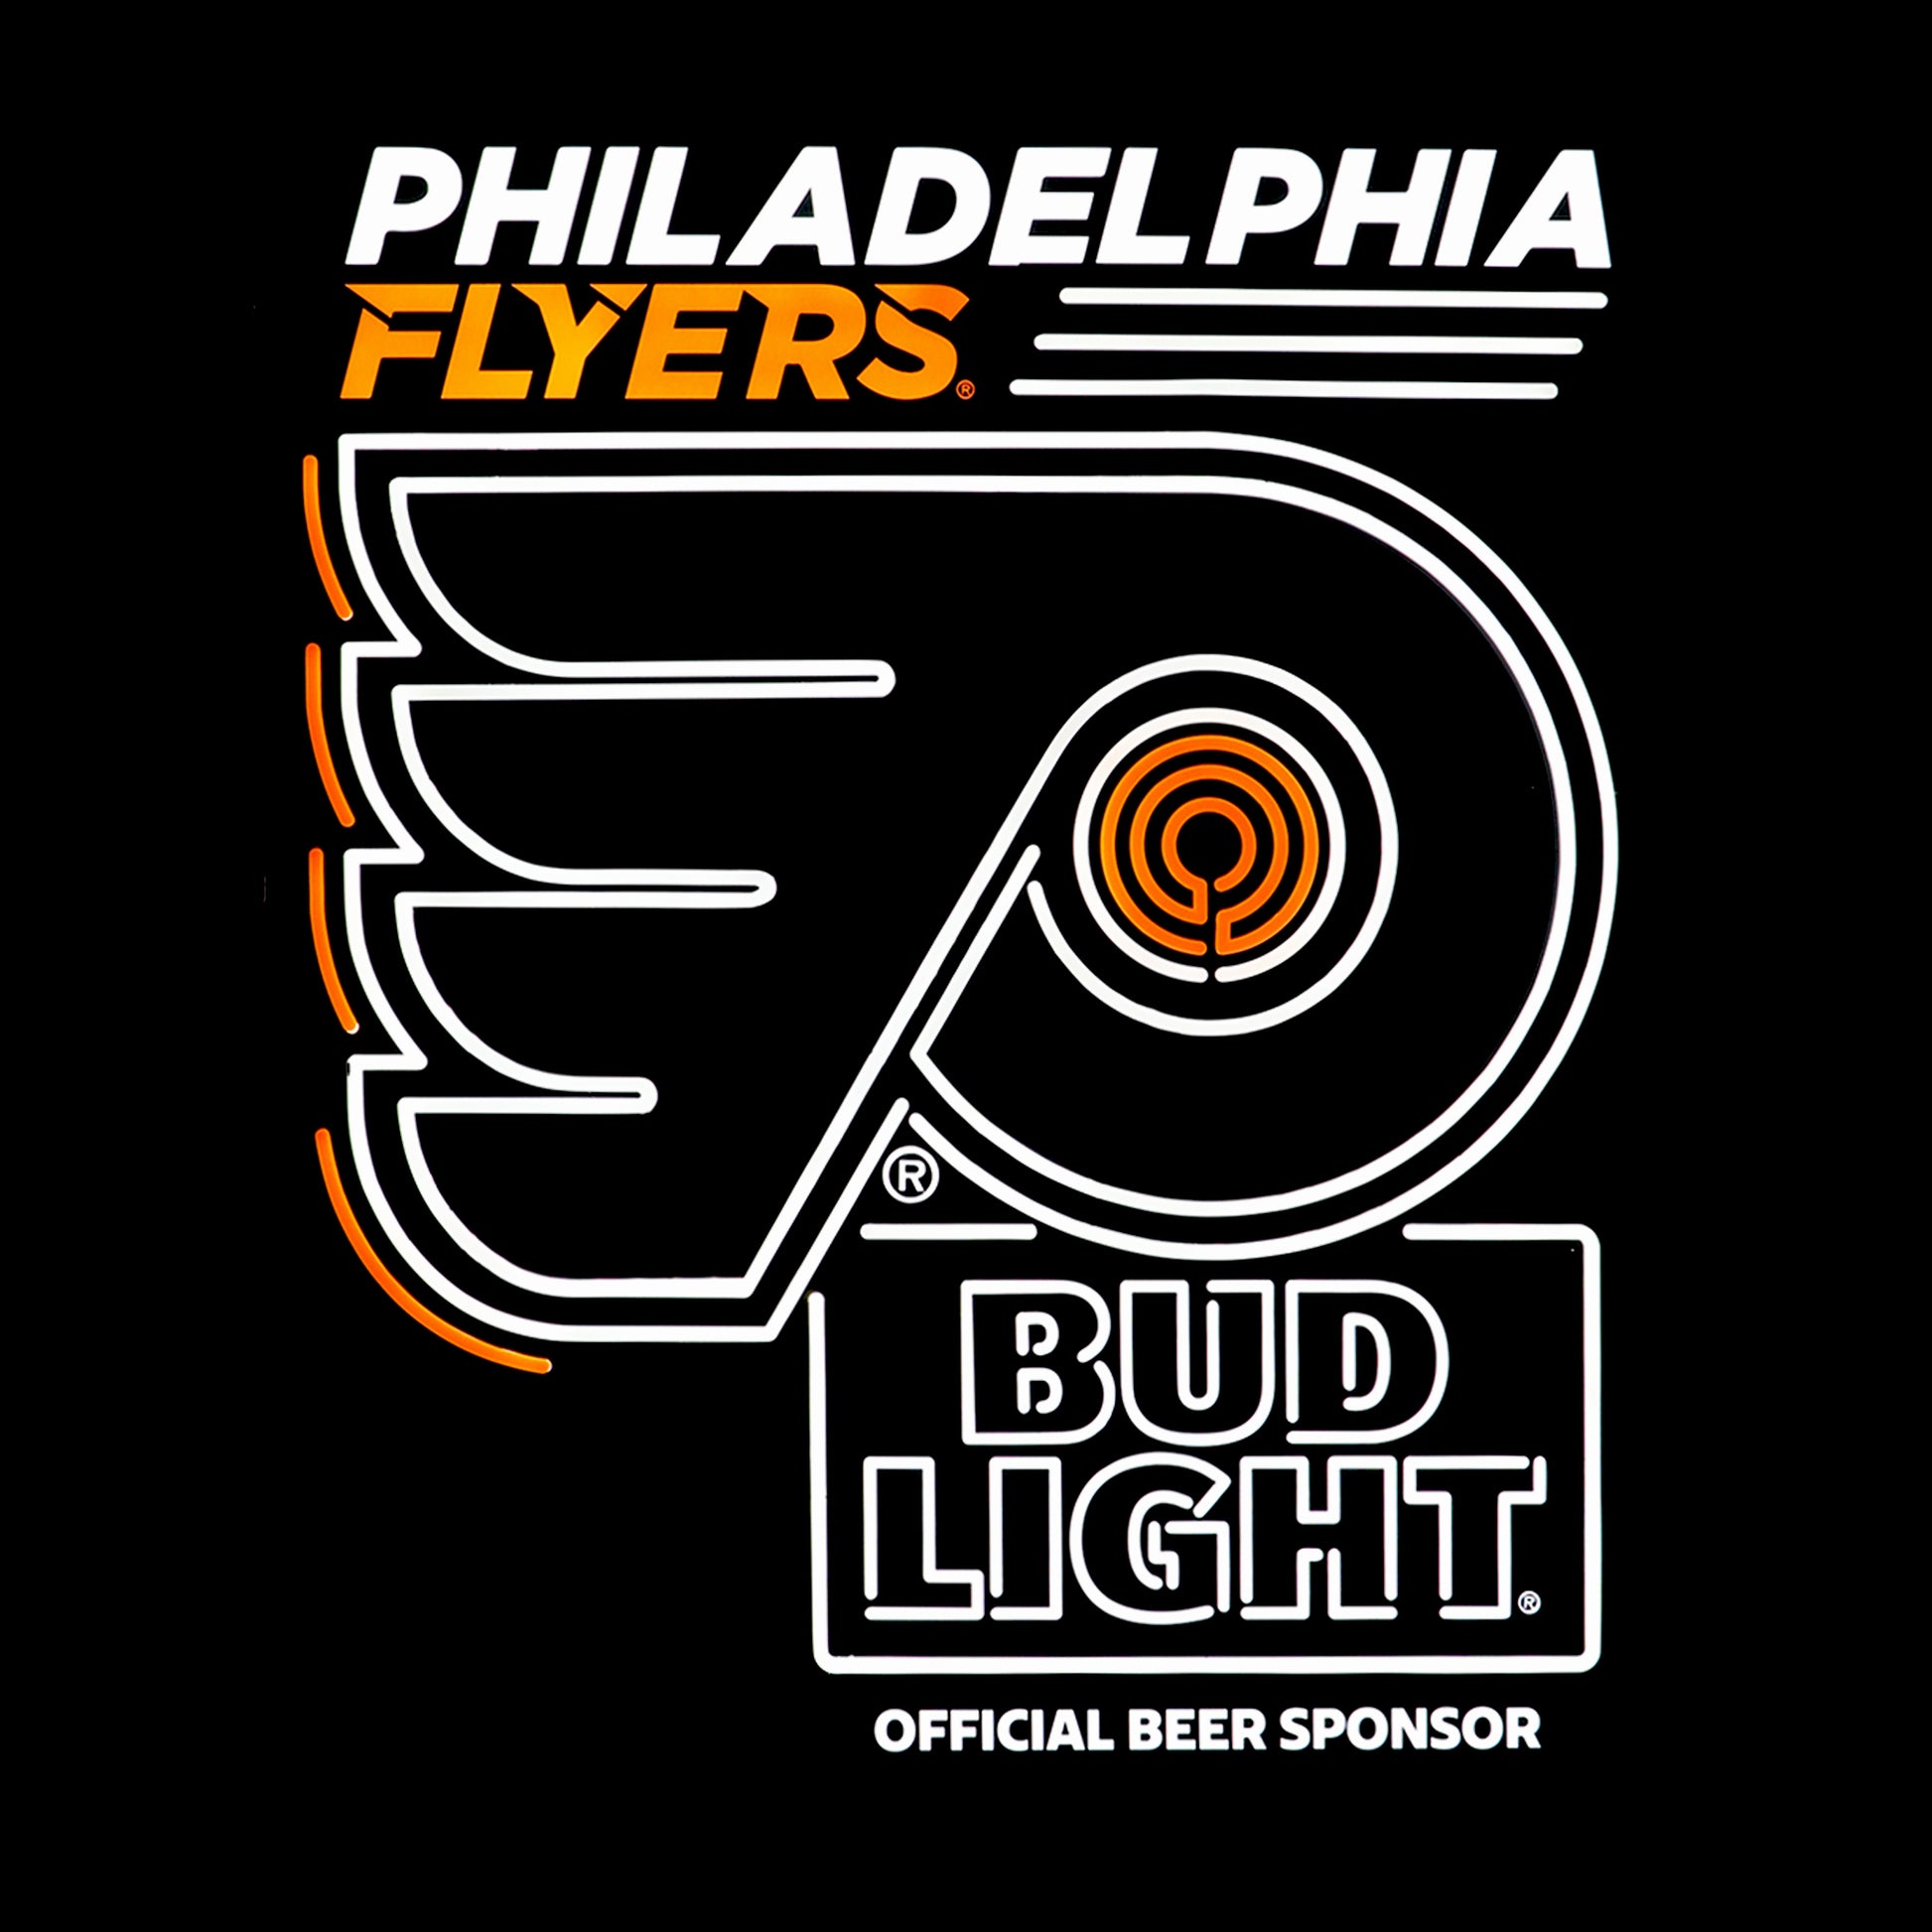 Philadelphia Flyers LED with black background